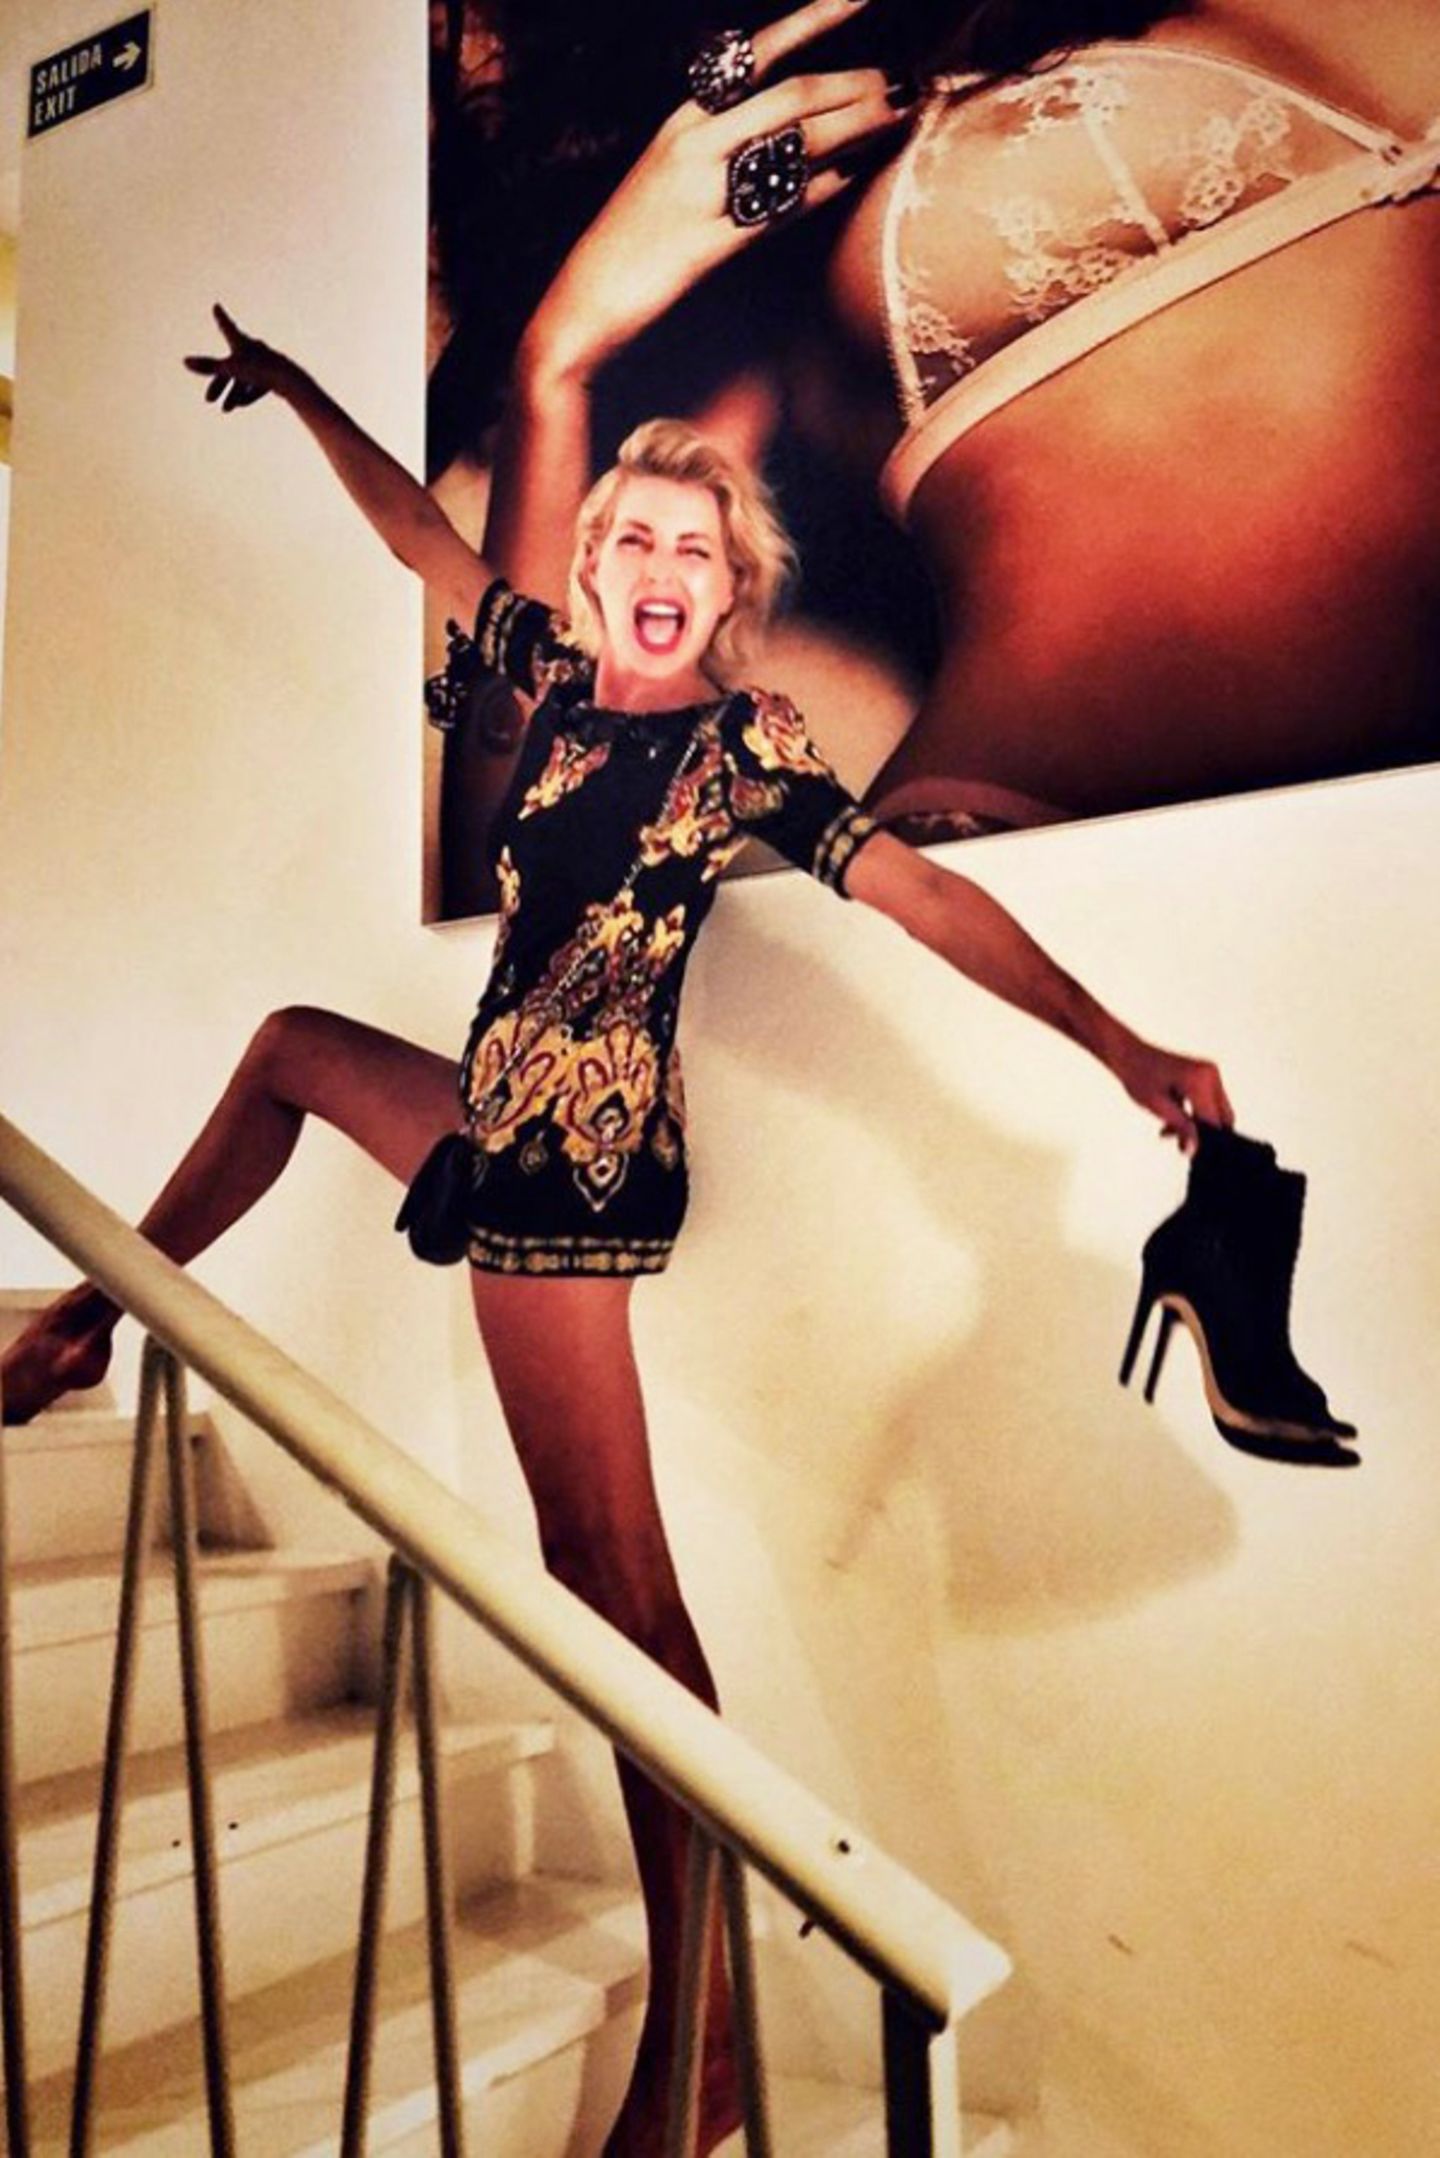 Star-DJane Giulia Siegel ist ohne Frage schon immer sehr schlank. Auf diesem aktuellen Instagram-Schnappschuss fällt ihre sehr schmale Taille und vor allem Beine allerdings mehr ins Auge als sonst. Liegt das etwa nur an ihrer Pose auf der Treppe? 